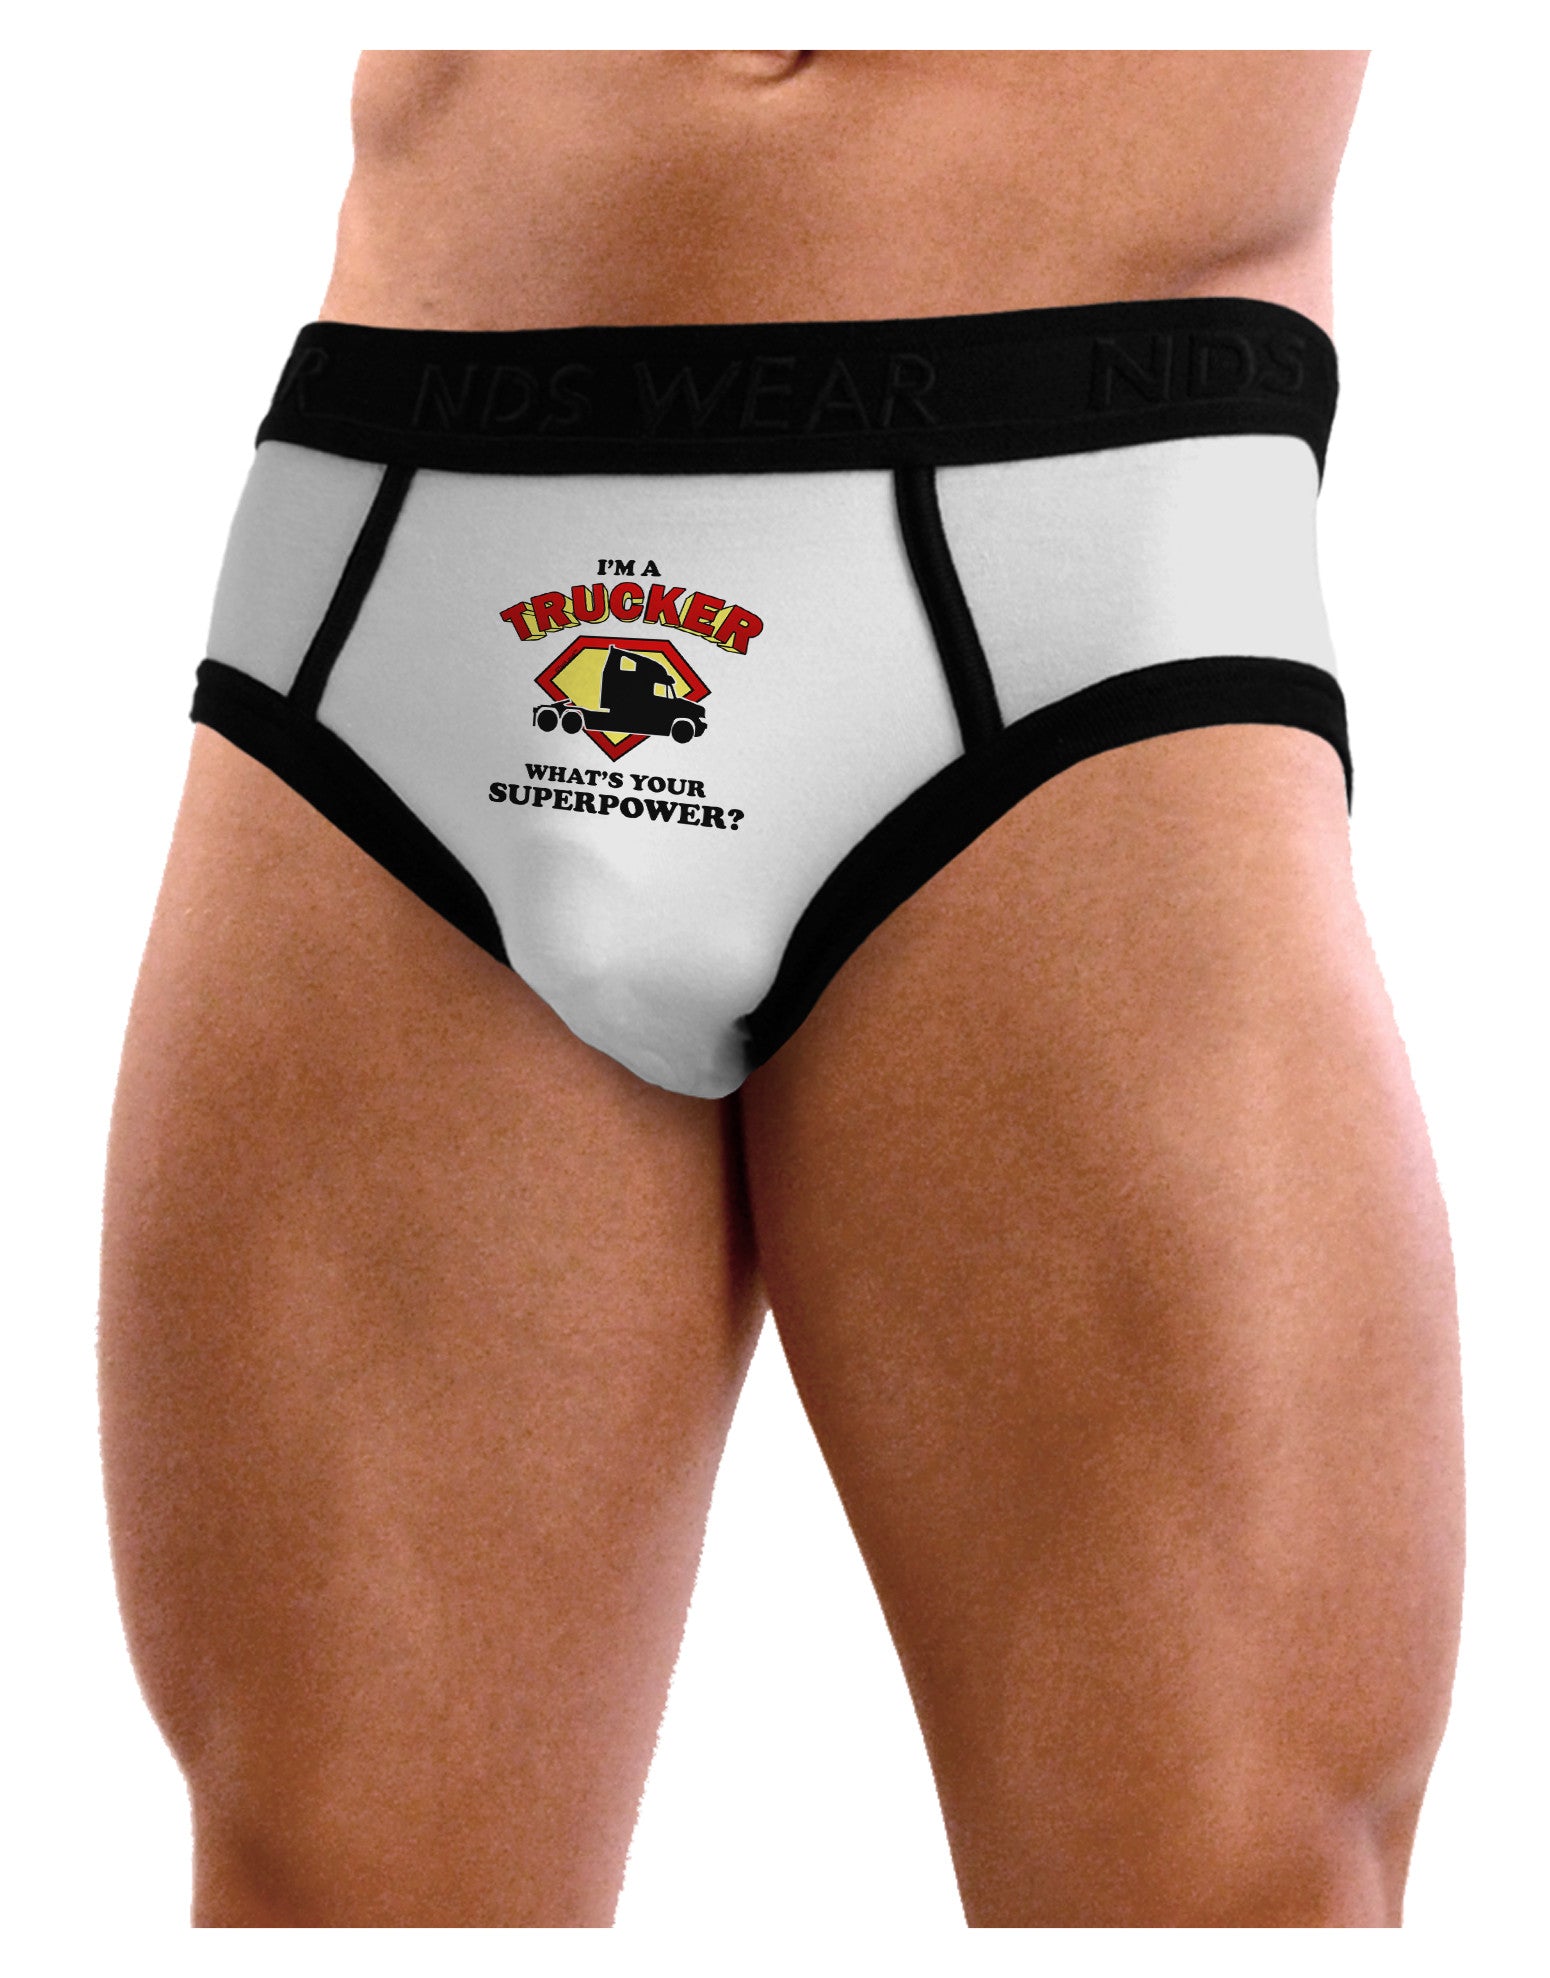 Trucker - Superpower Mens NDS Wear Briefs Underwear